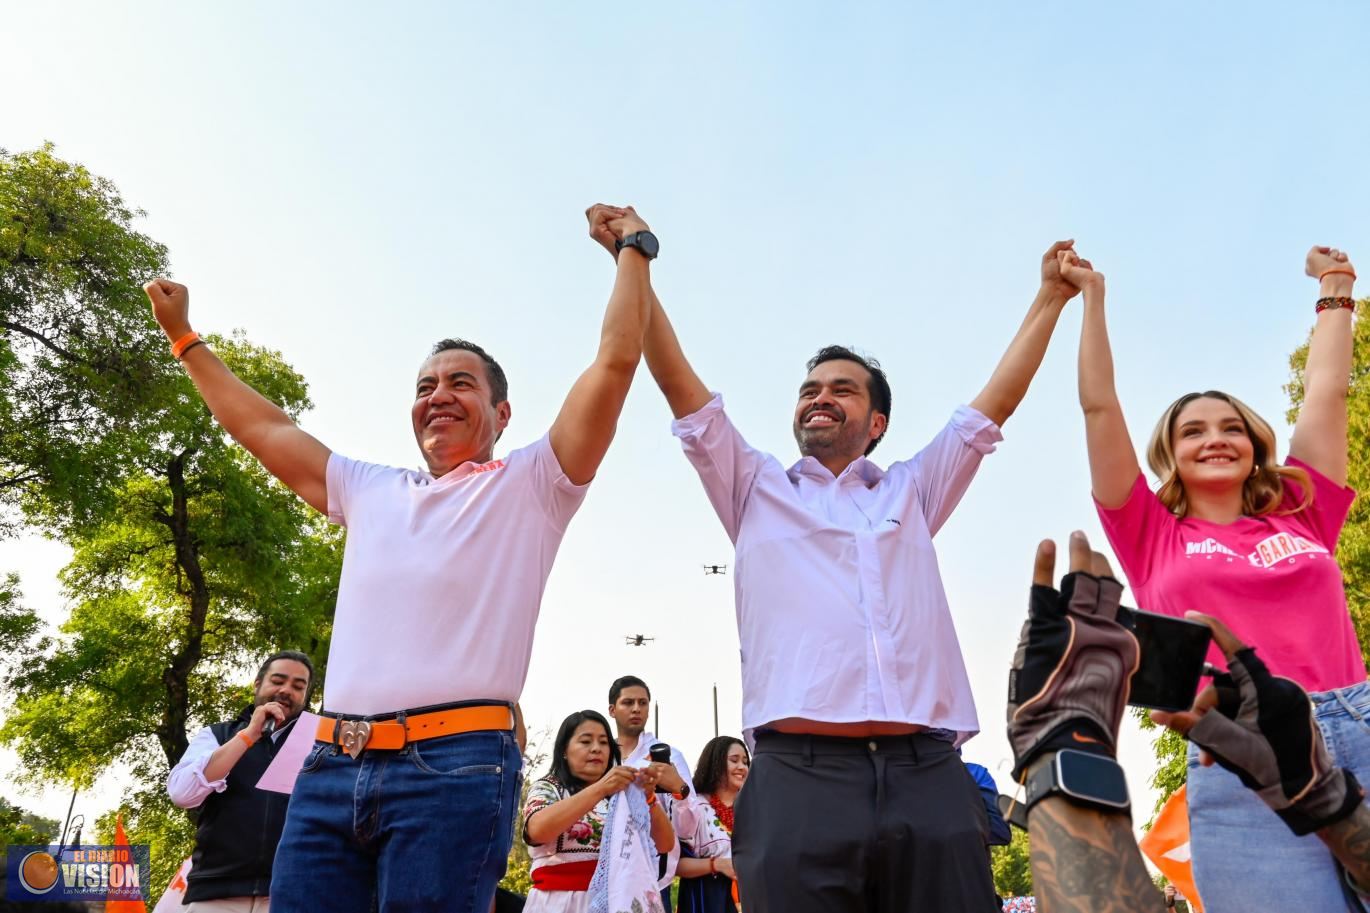 Movimiento Ciudadano tendrá presidente de México y senadores por Michoacán: Carlos Herrera